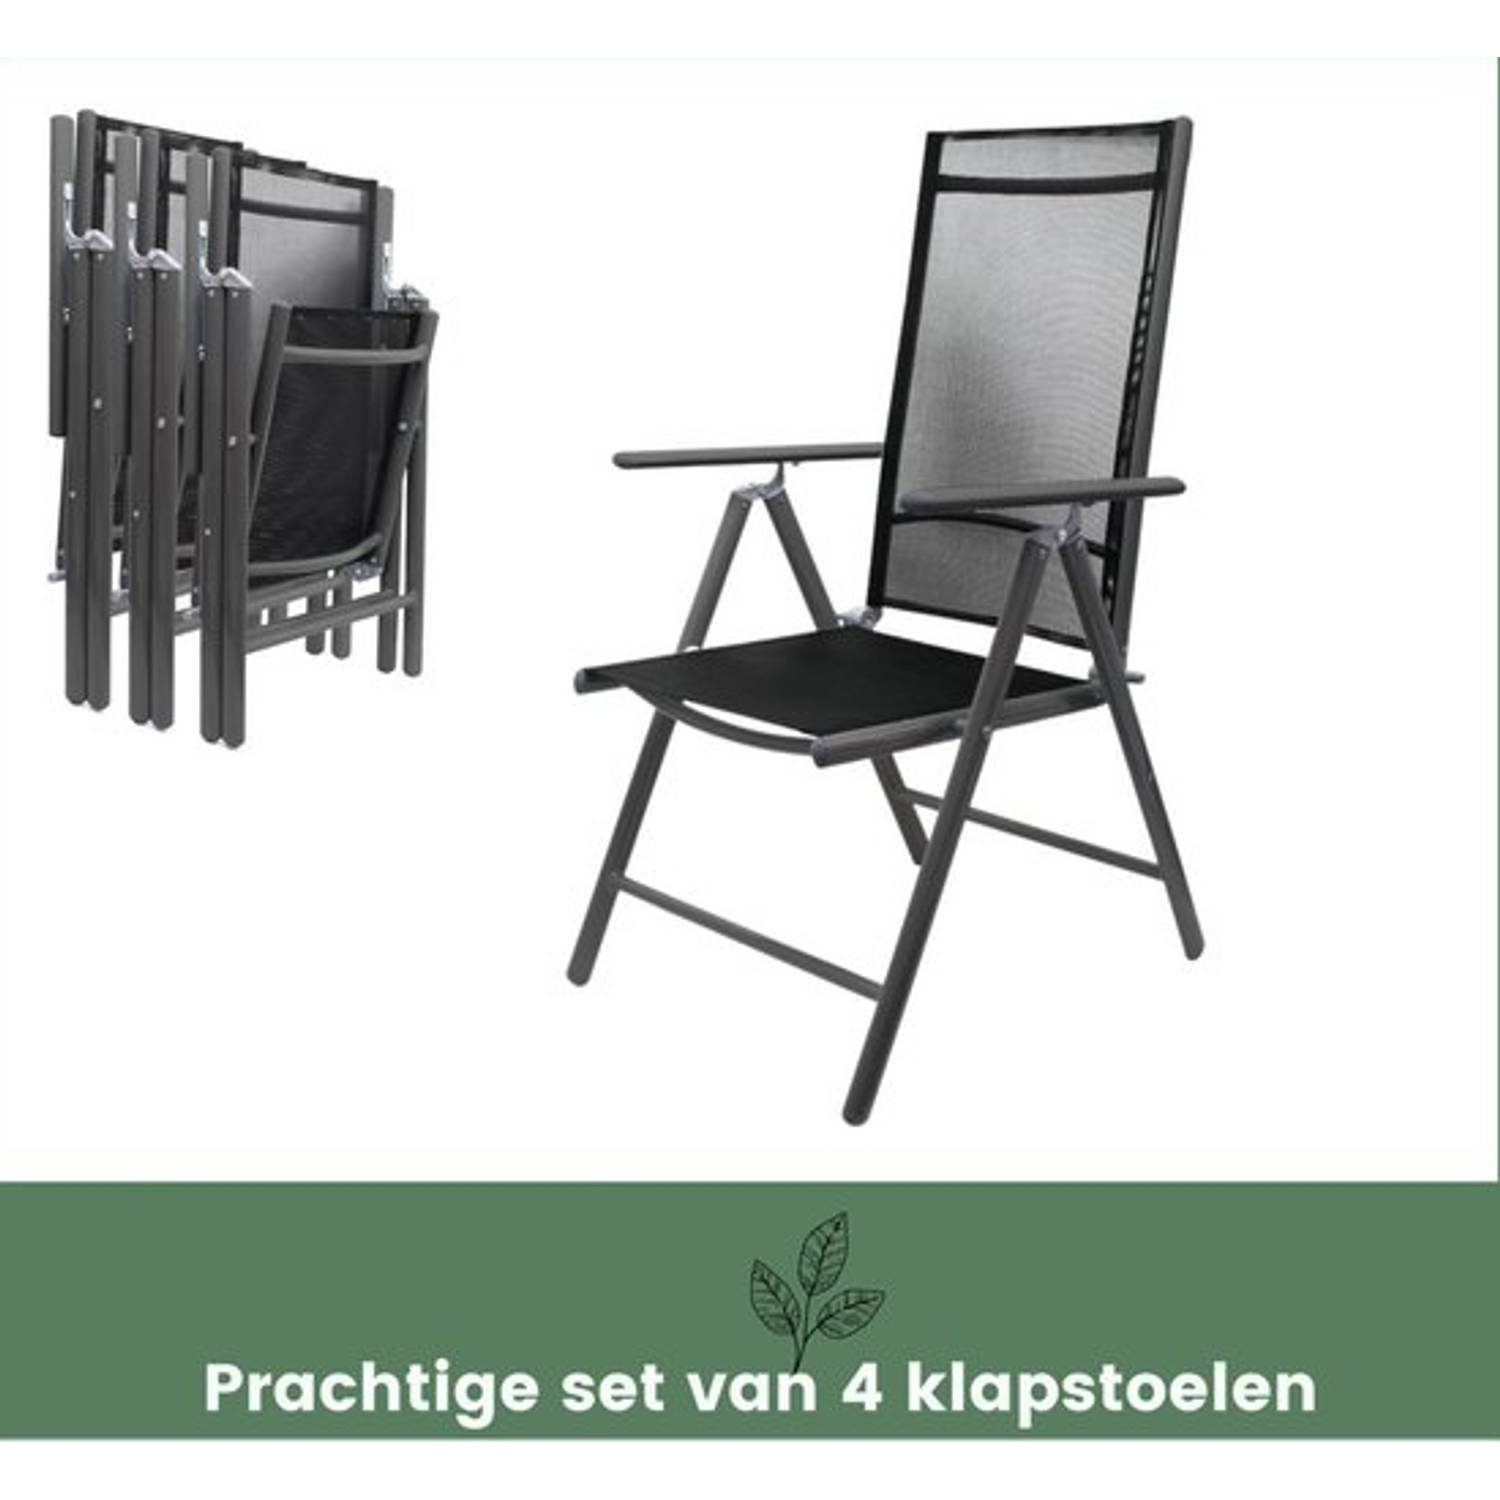 Klapstoel - Set van 4 - Vouwstoel - Klapstoelen Klapstoel camping - Tuinstoel - Tuinstoelen - Aluminium - Antraciet